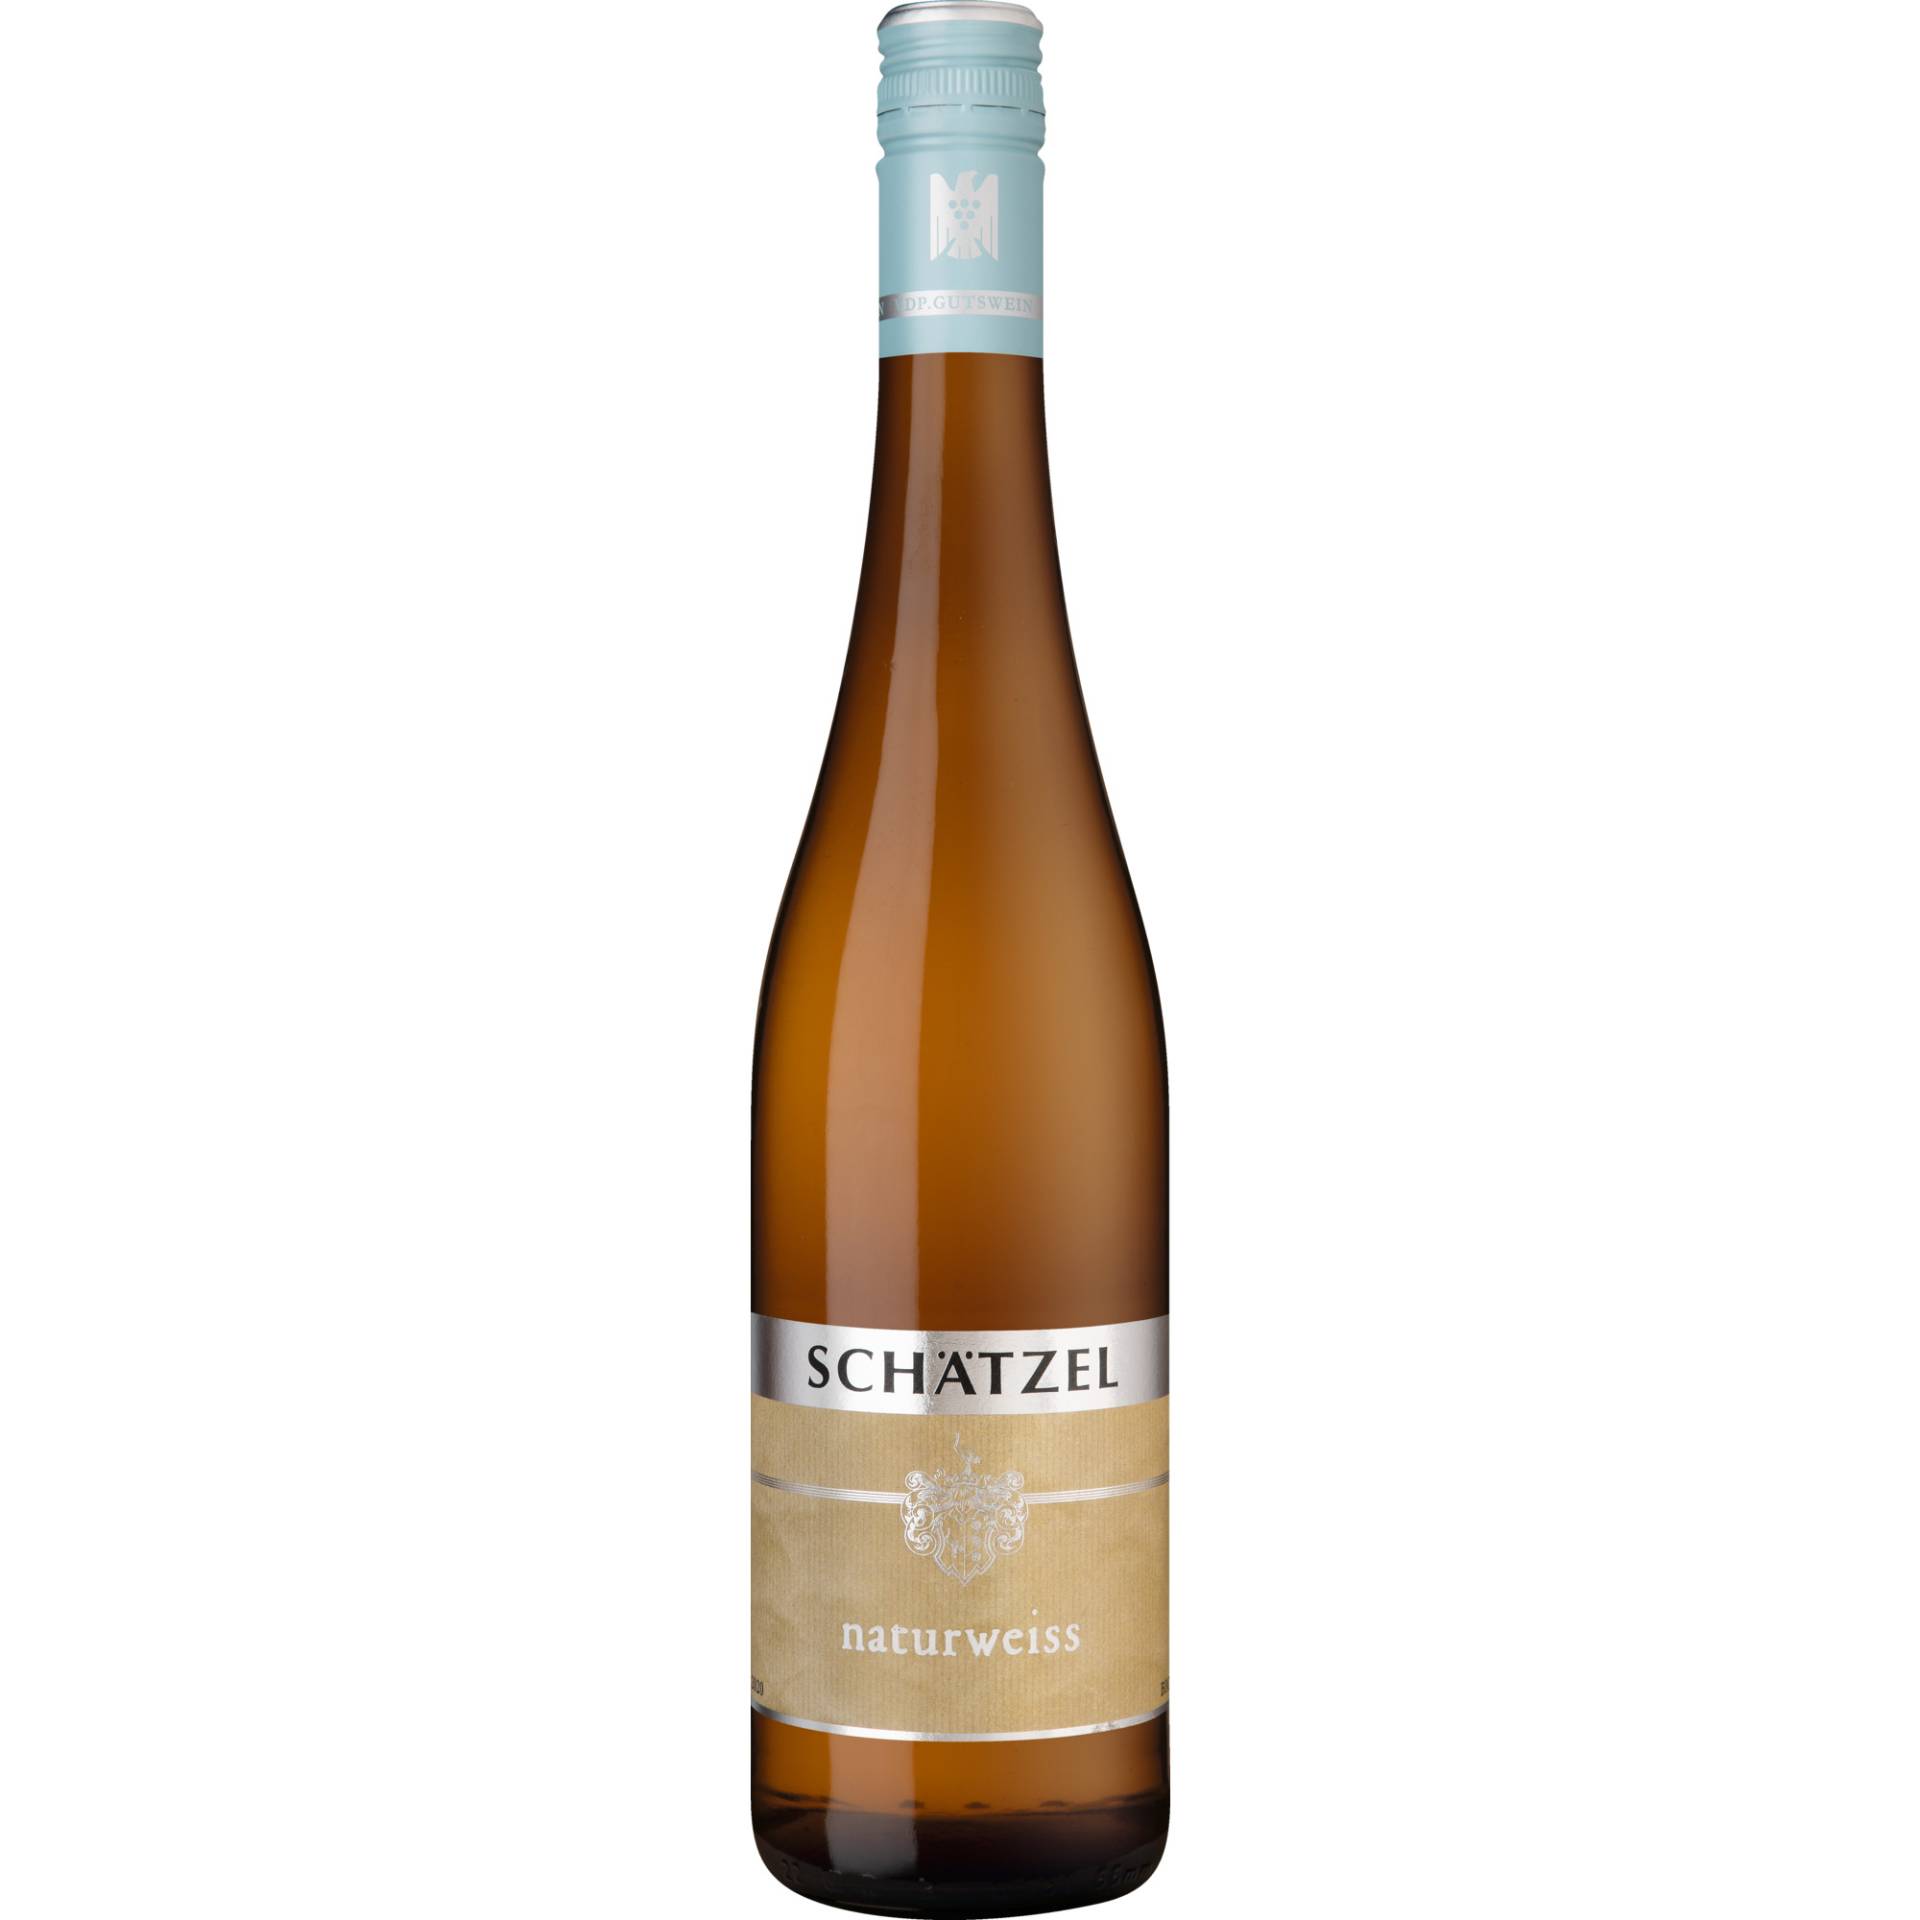 Schätzel Naturweiss, Trocken, Landwein Rhein, Deutscher Landwein Rhein, 2020, Weißwein von Weingut Schätzel, D - 55283 Nierstein